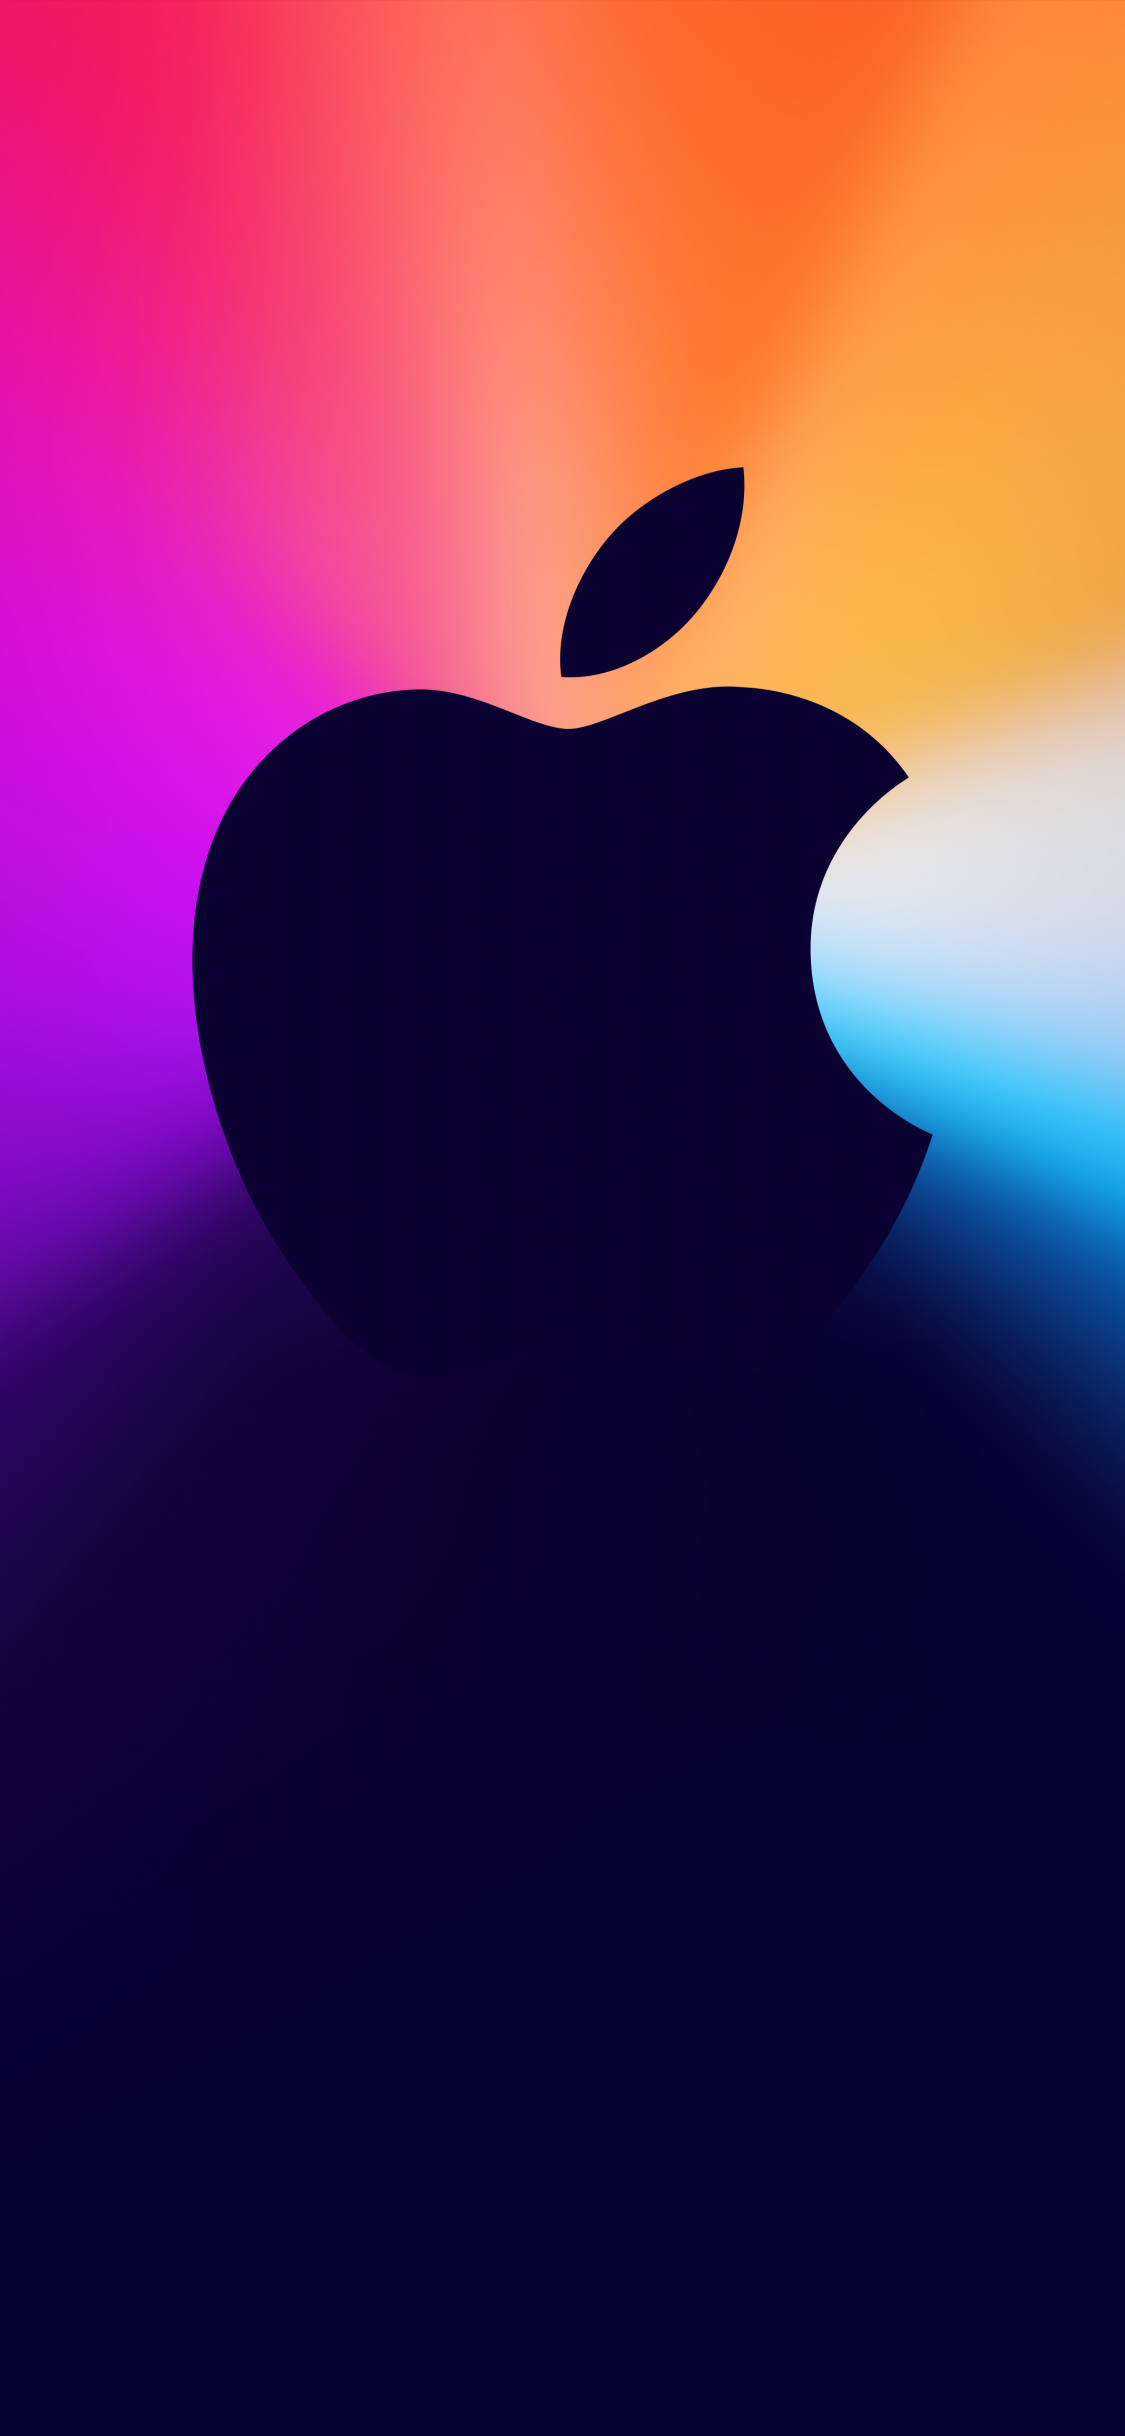 Hình nền One more thing Apple logo 4K: Bạn là một fan cứng của Apple, yêu thích sự đổi mới và công nghệ hiện đại? Chúng tôi xin giới thiệu đến bạn những hình nền 4K với logo One more thing của Apple, sẽ khiến cho màn hình iPhone của bạn trở nên độc đáo và nổi bật! 